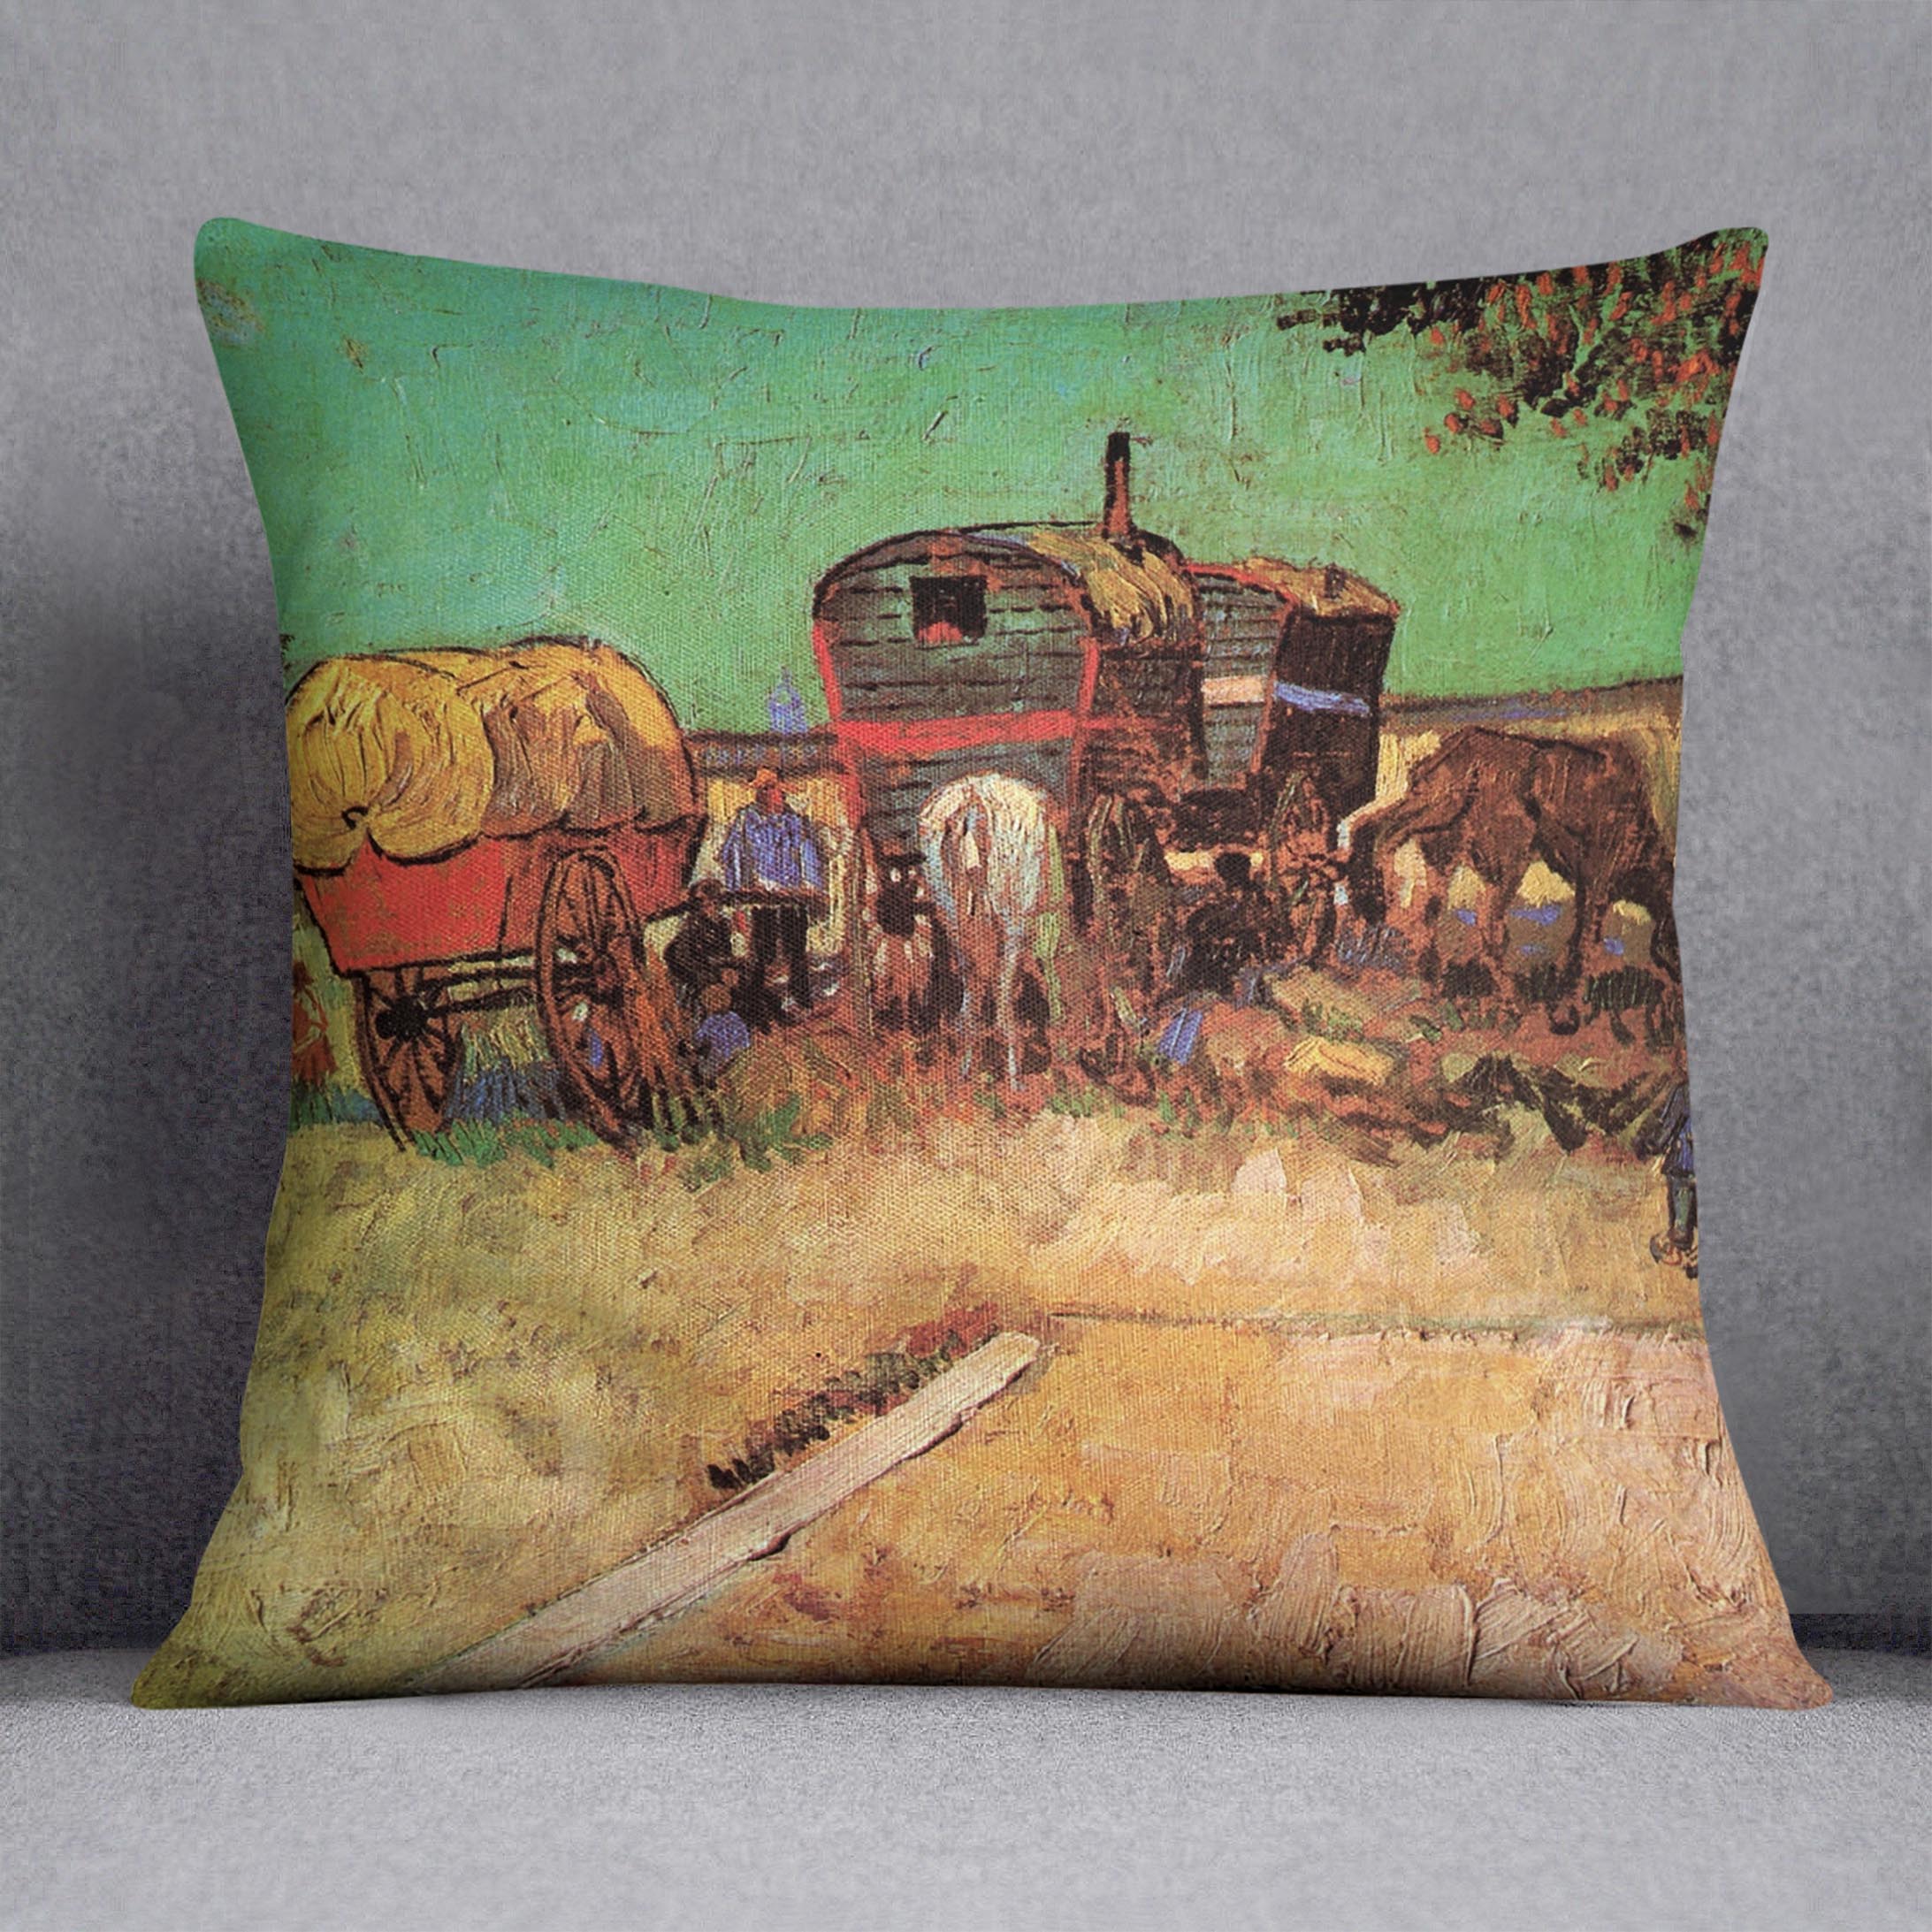 Encampment of Gypsies with Caravans by Van Gogh Cushion